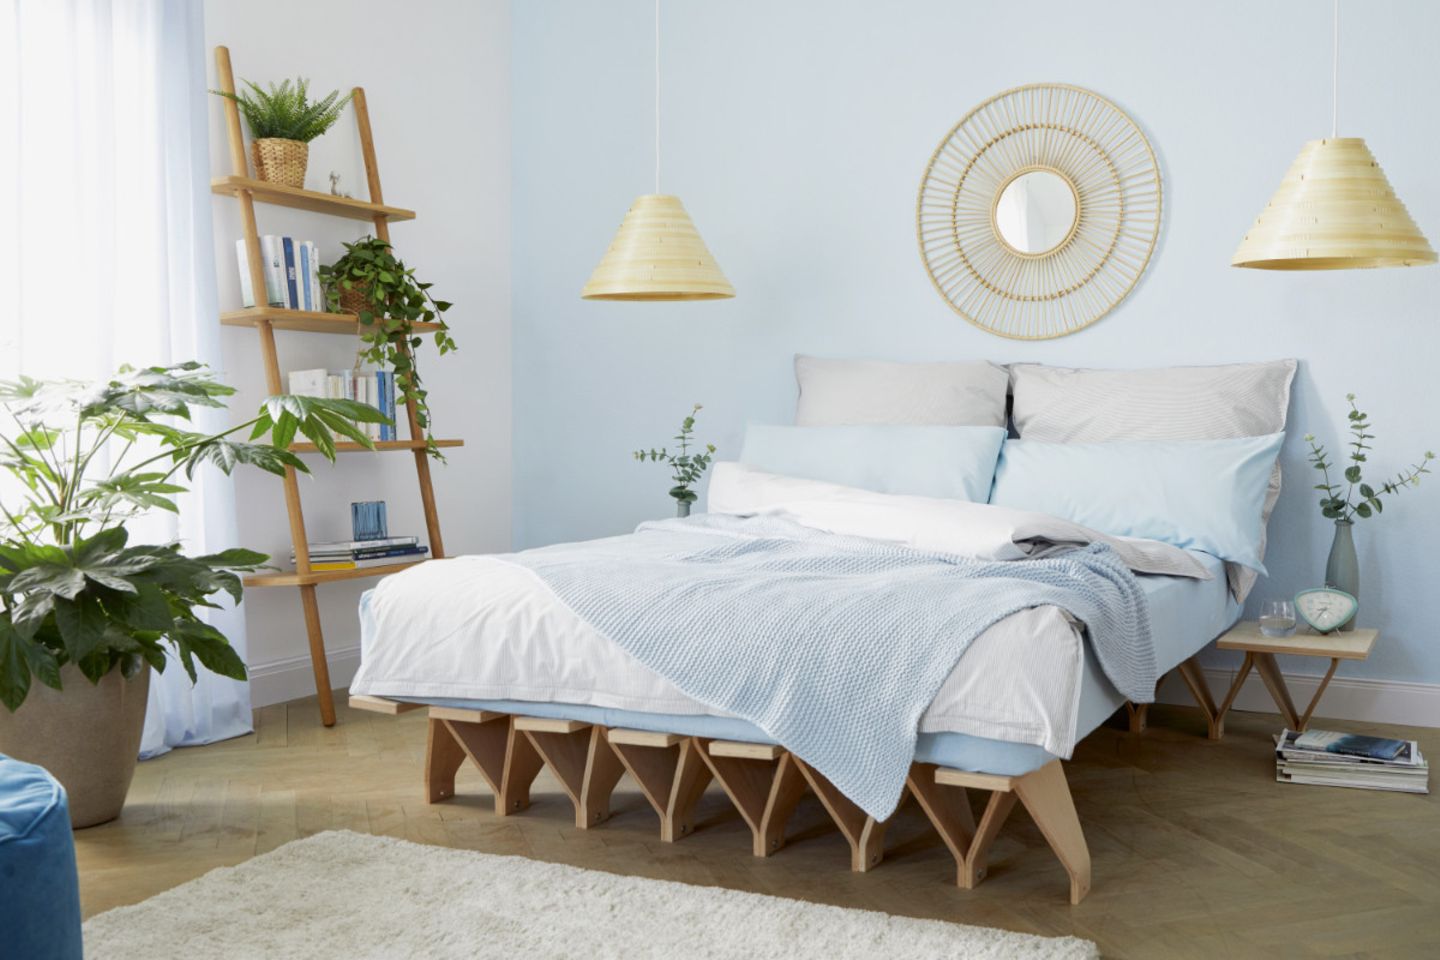 Unter anderem mit Regalleiter, Pflanzen, Wanddeko und Furnierleuchten dekoriertes Schlafzimmer in Weiß und Hellblau